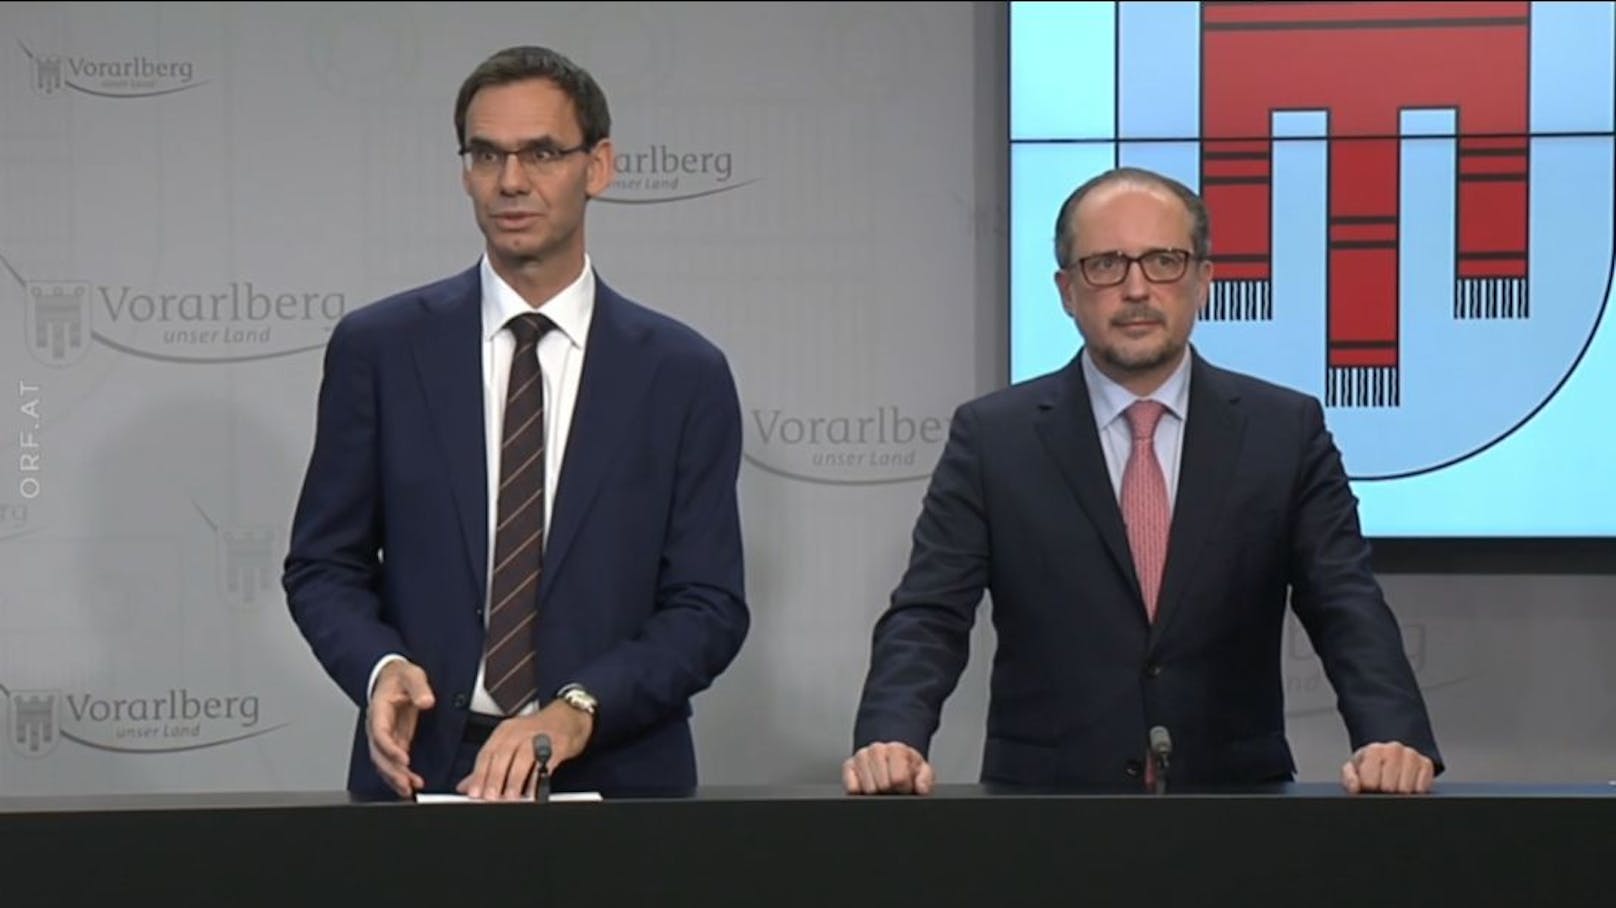 Bilder des gemeinsamen Pressegesprächs von Kanzler Alexander Schallenberg und Vorarlbergs LH Markus Wallner am 11. November 2021.